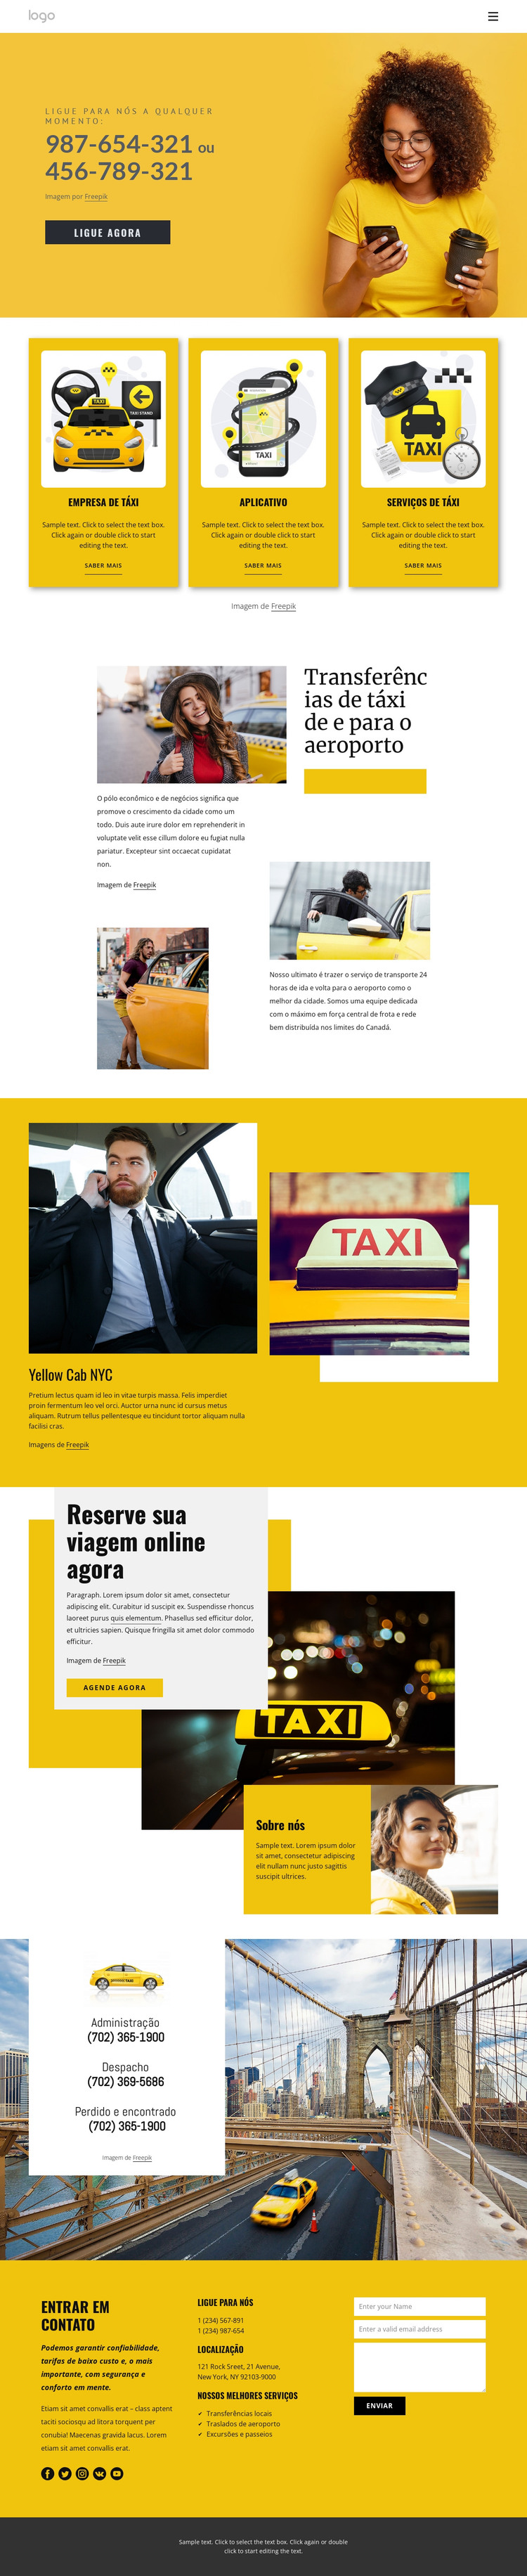 Serviço de táxi de qualidade Modelo HTML